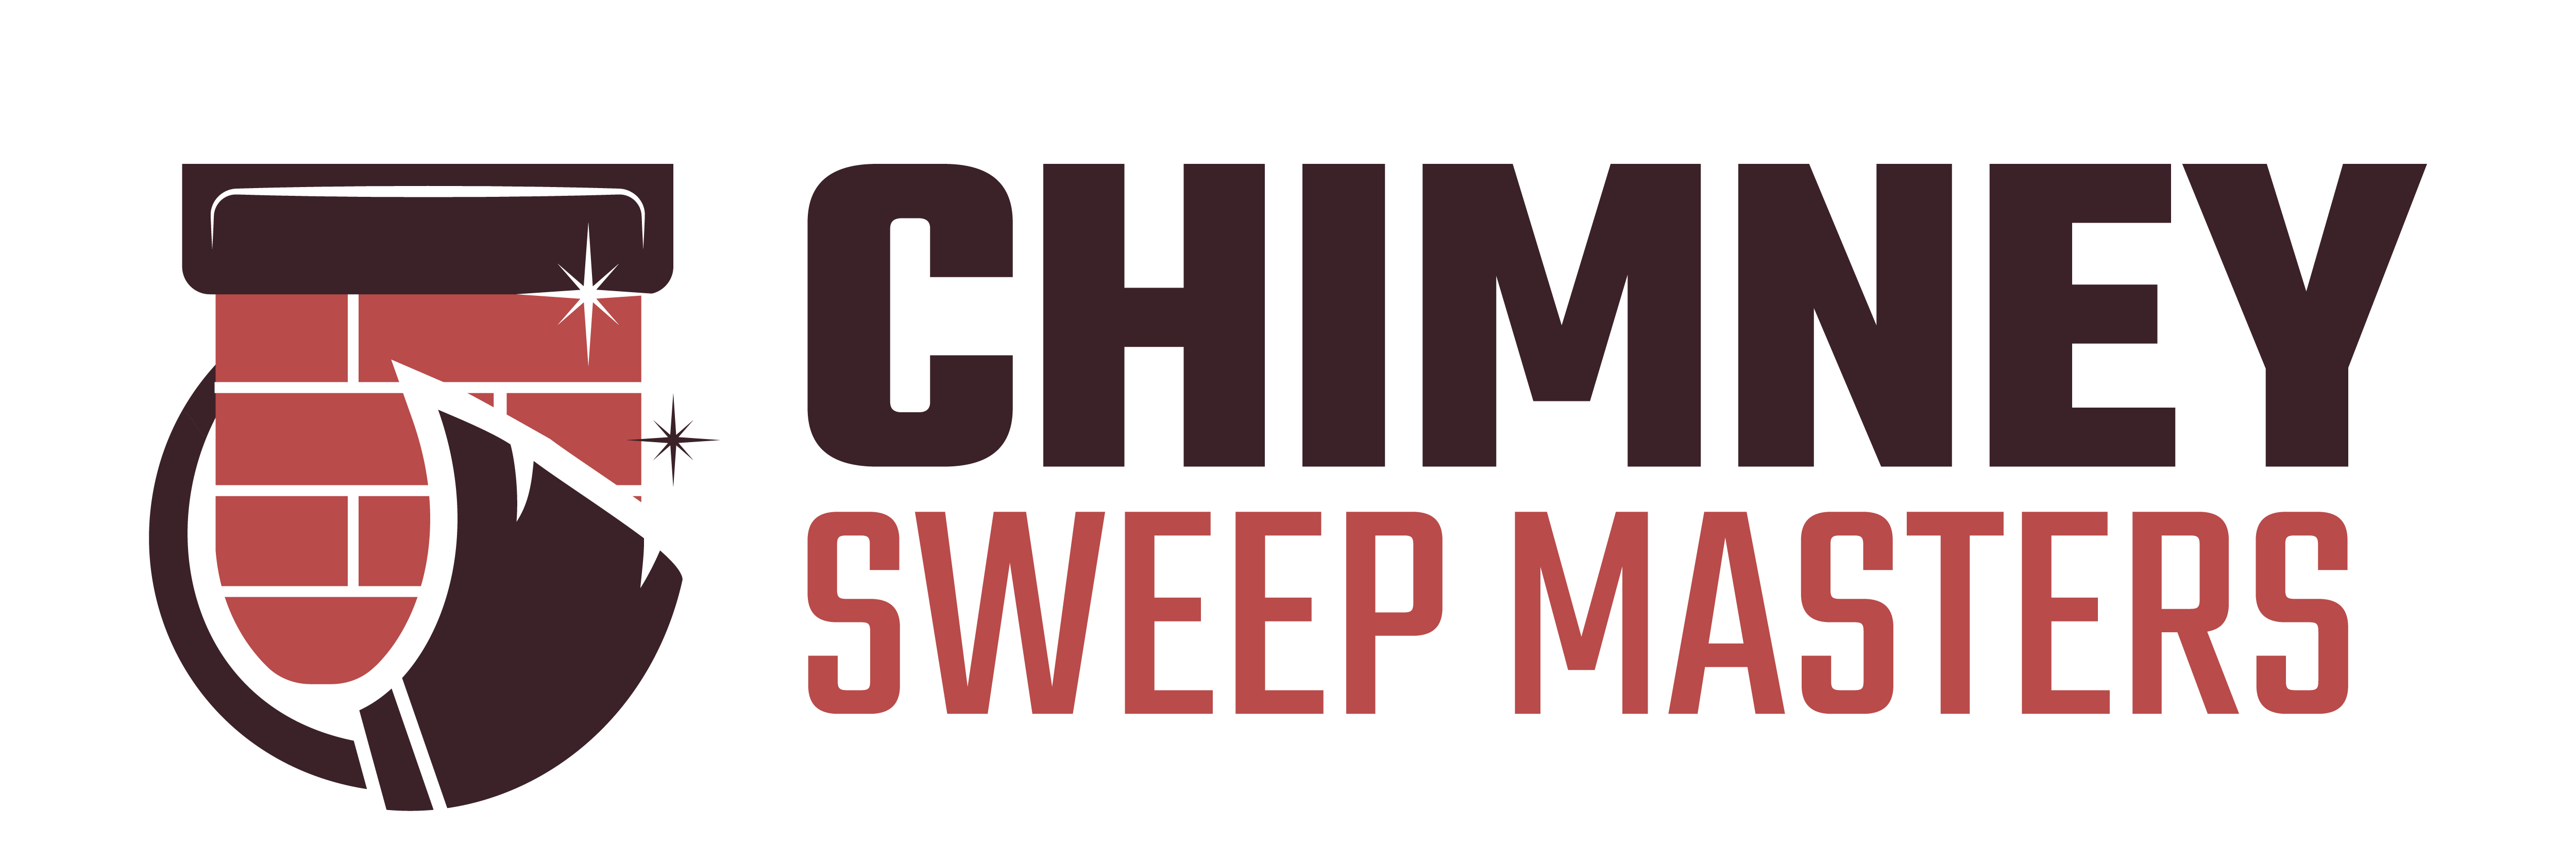 Chimney Sweep Masters Southridge Village Logo